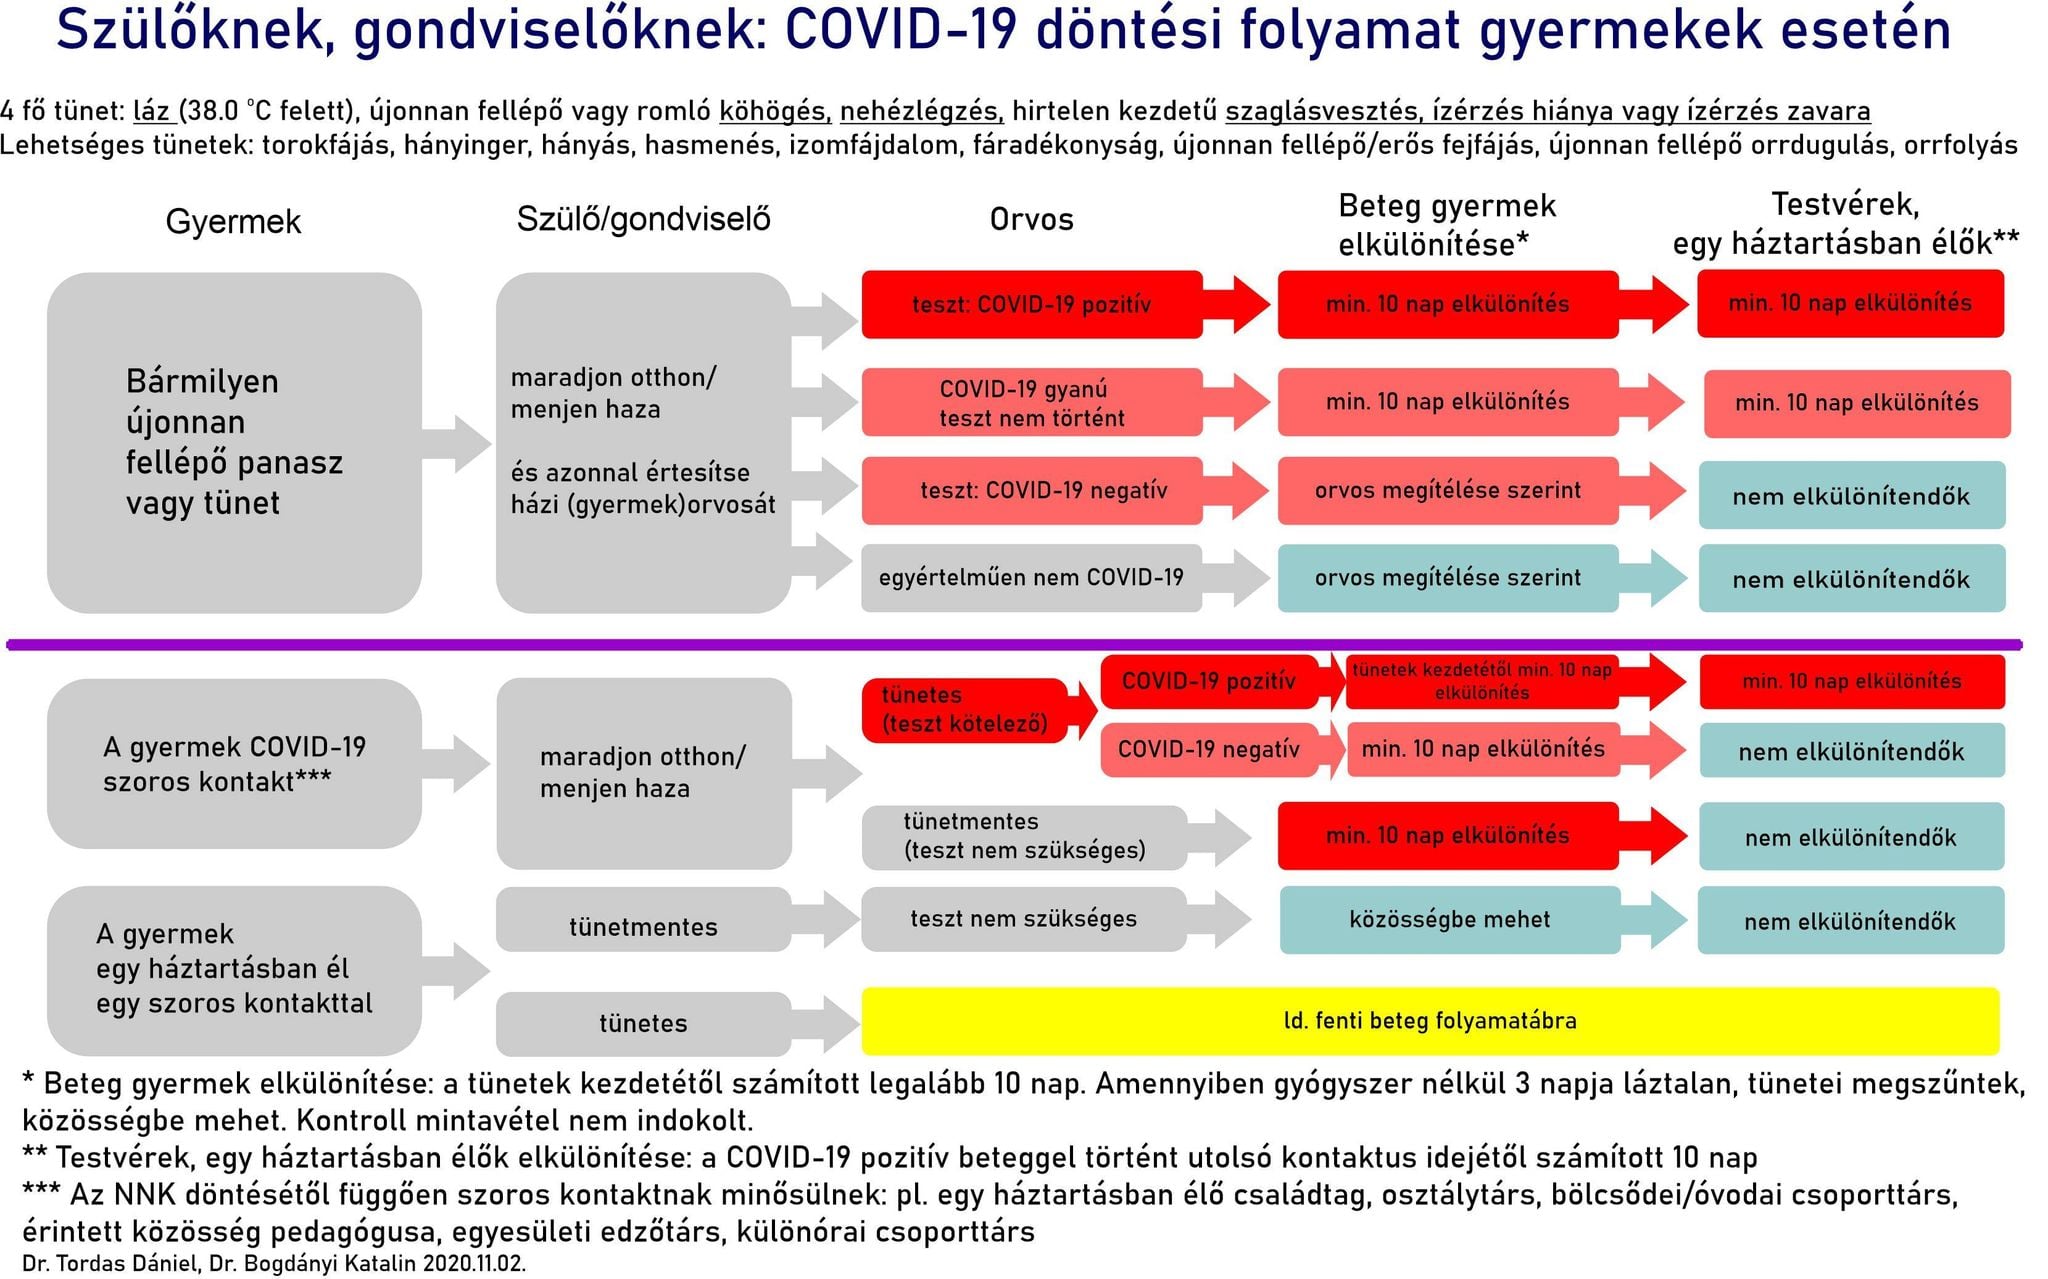 Covid-19 döntési folyamat ábra gyermekek esetében